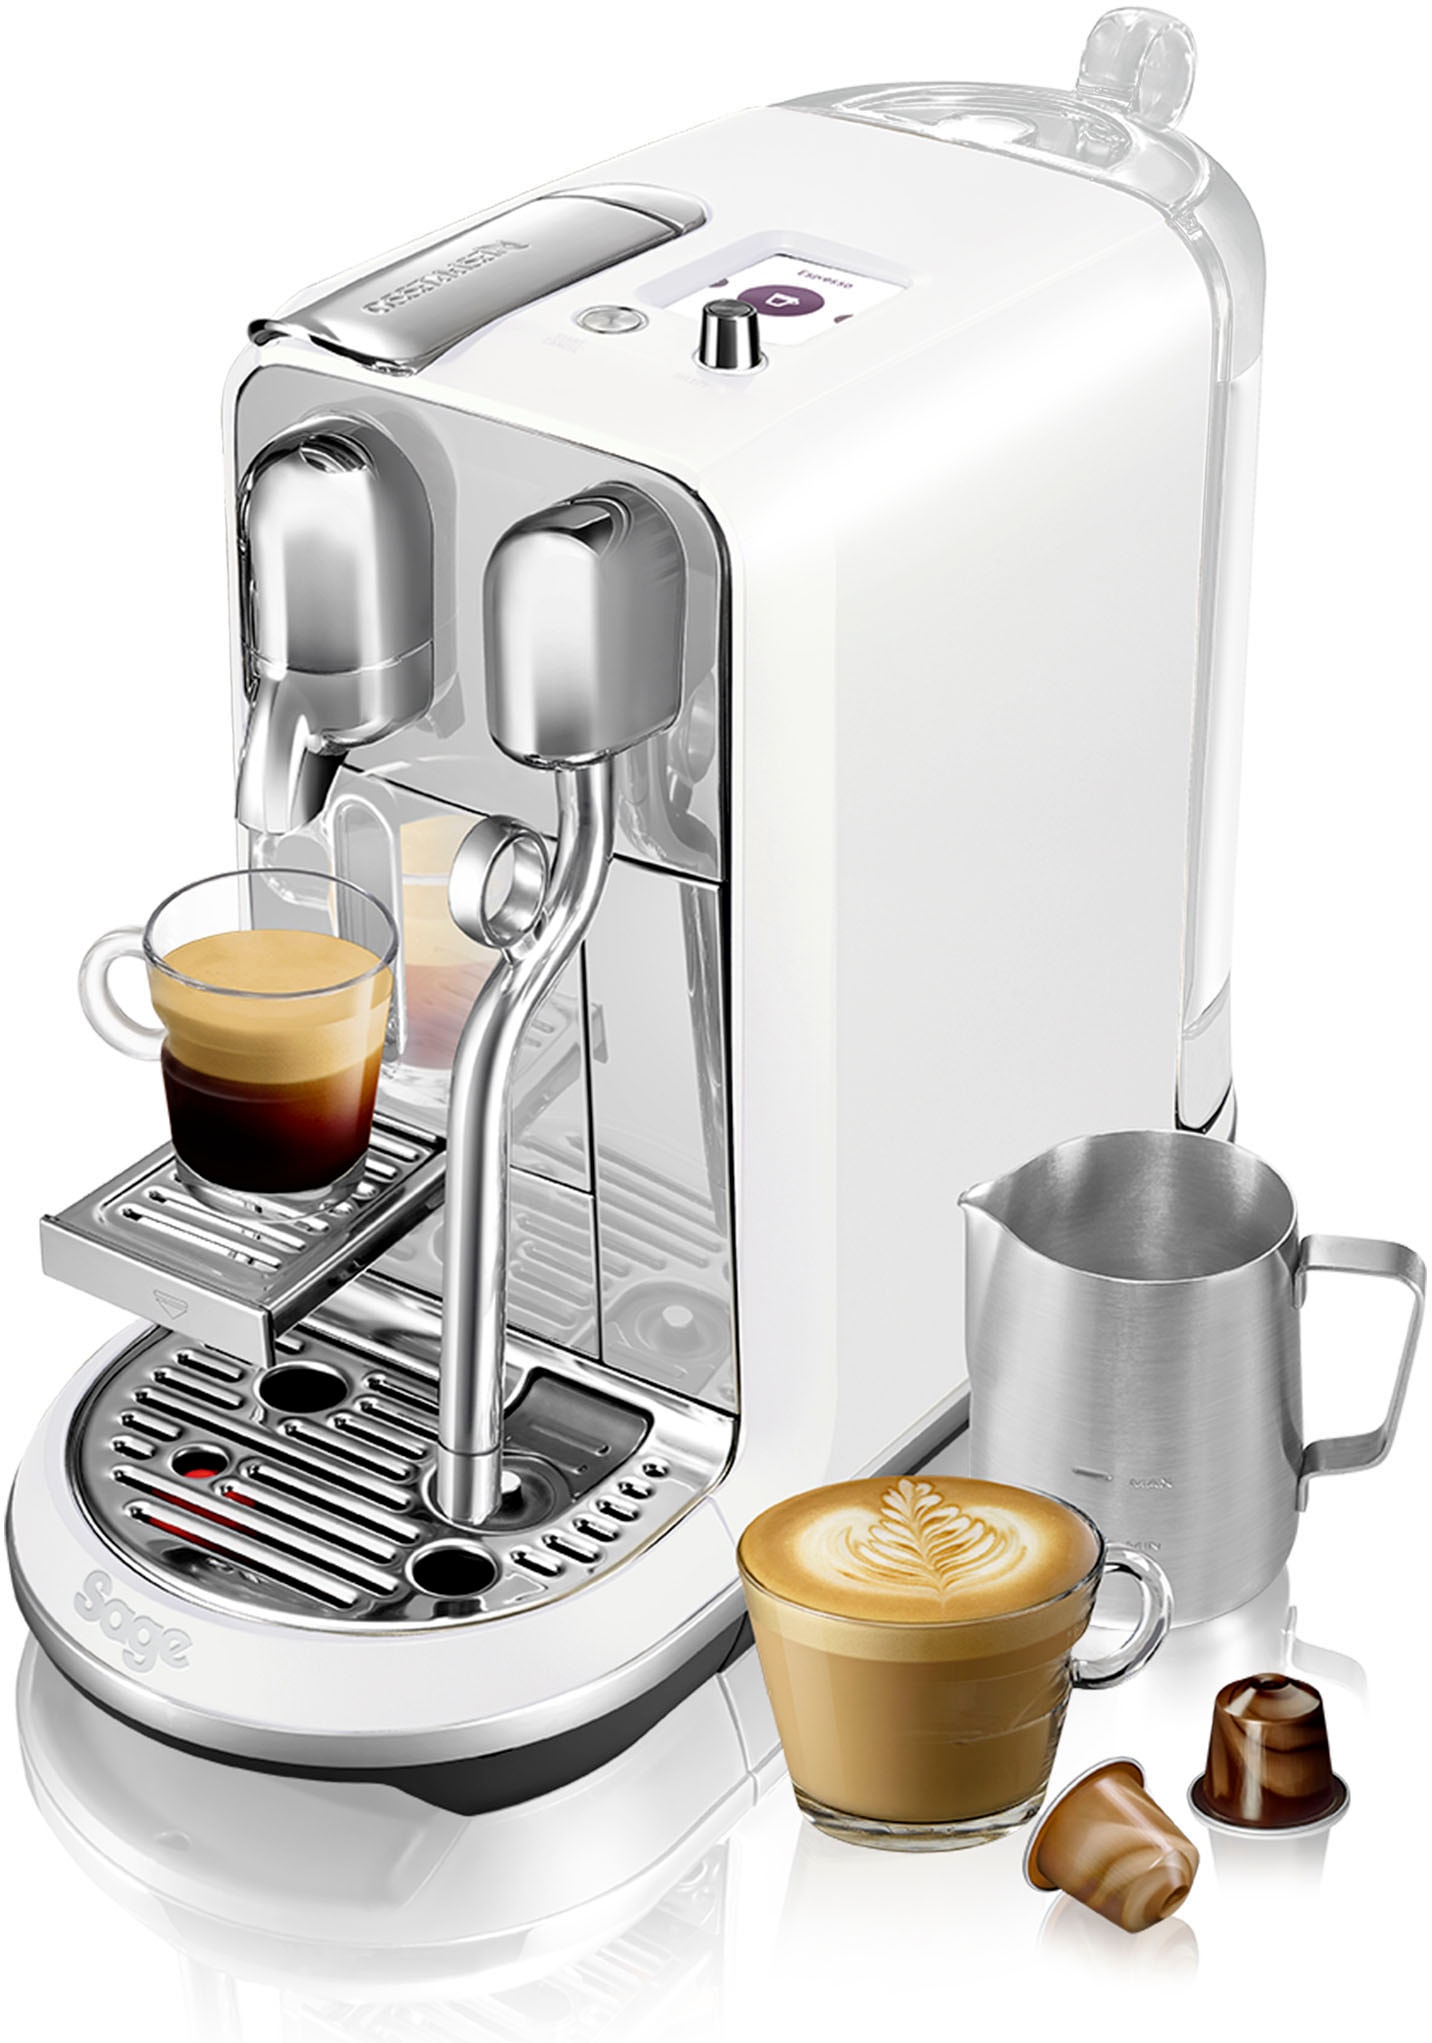 Nespresso Kaffeemaschinen jetzt günstig auf bestellen Teilzahlung